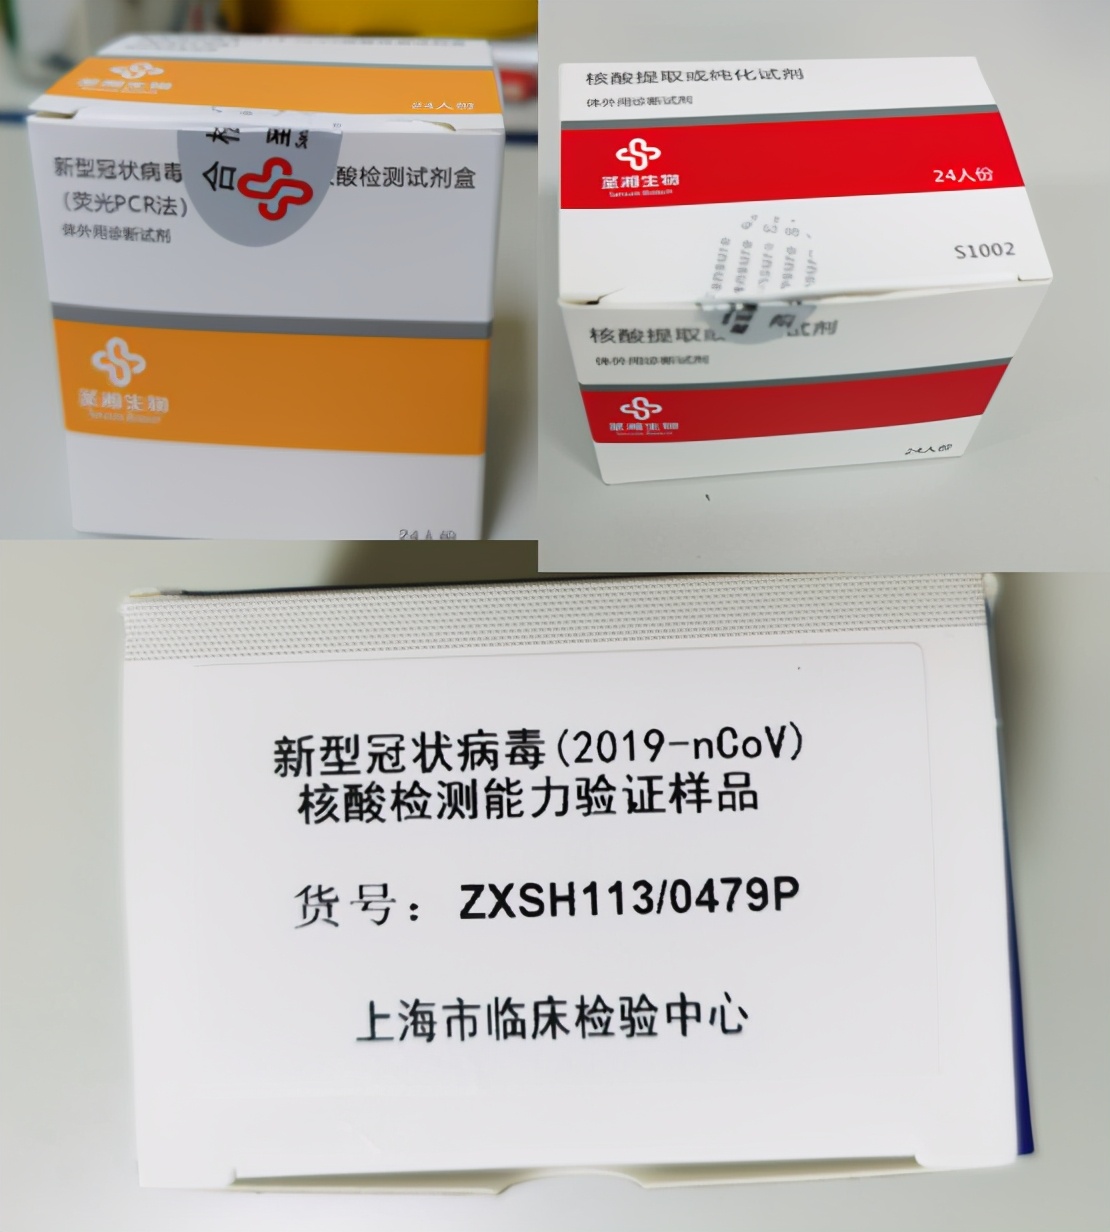 上海市同仁医院核酸检测团队荣获「抗疫检验模范团队」称号